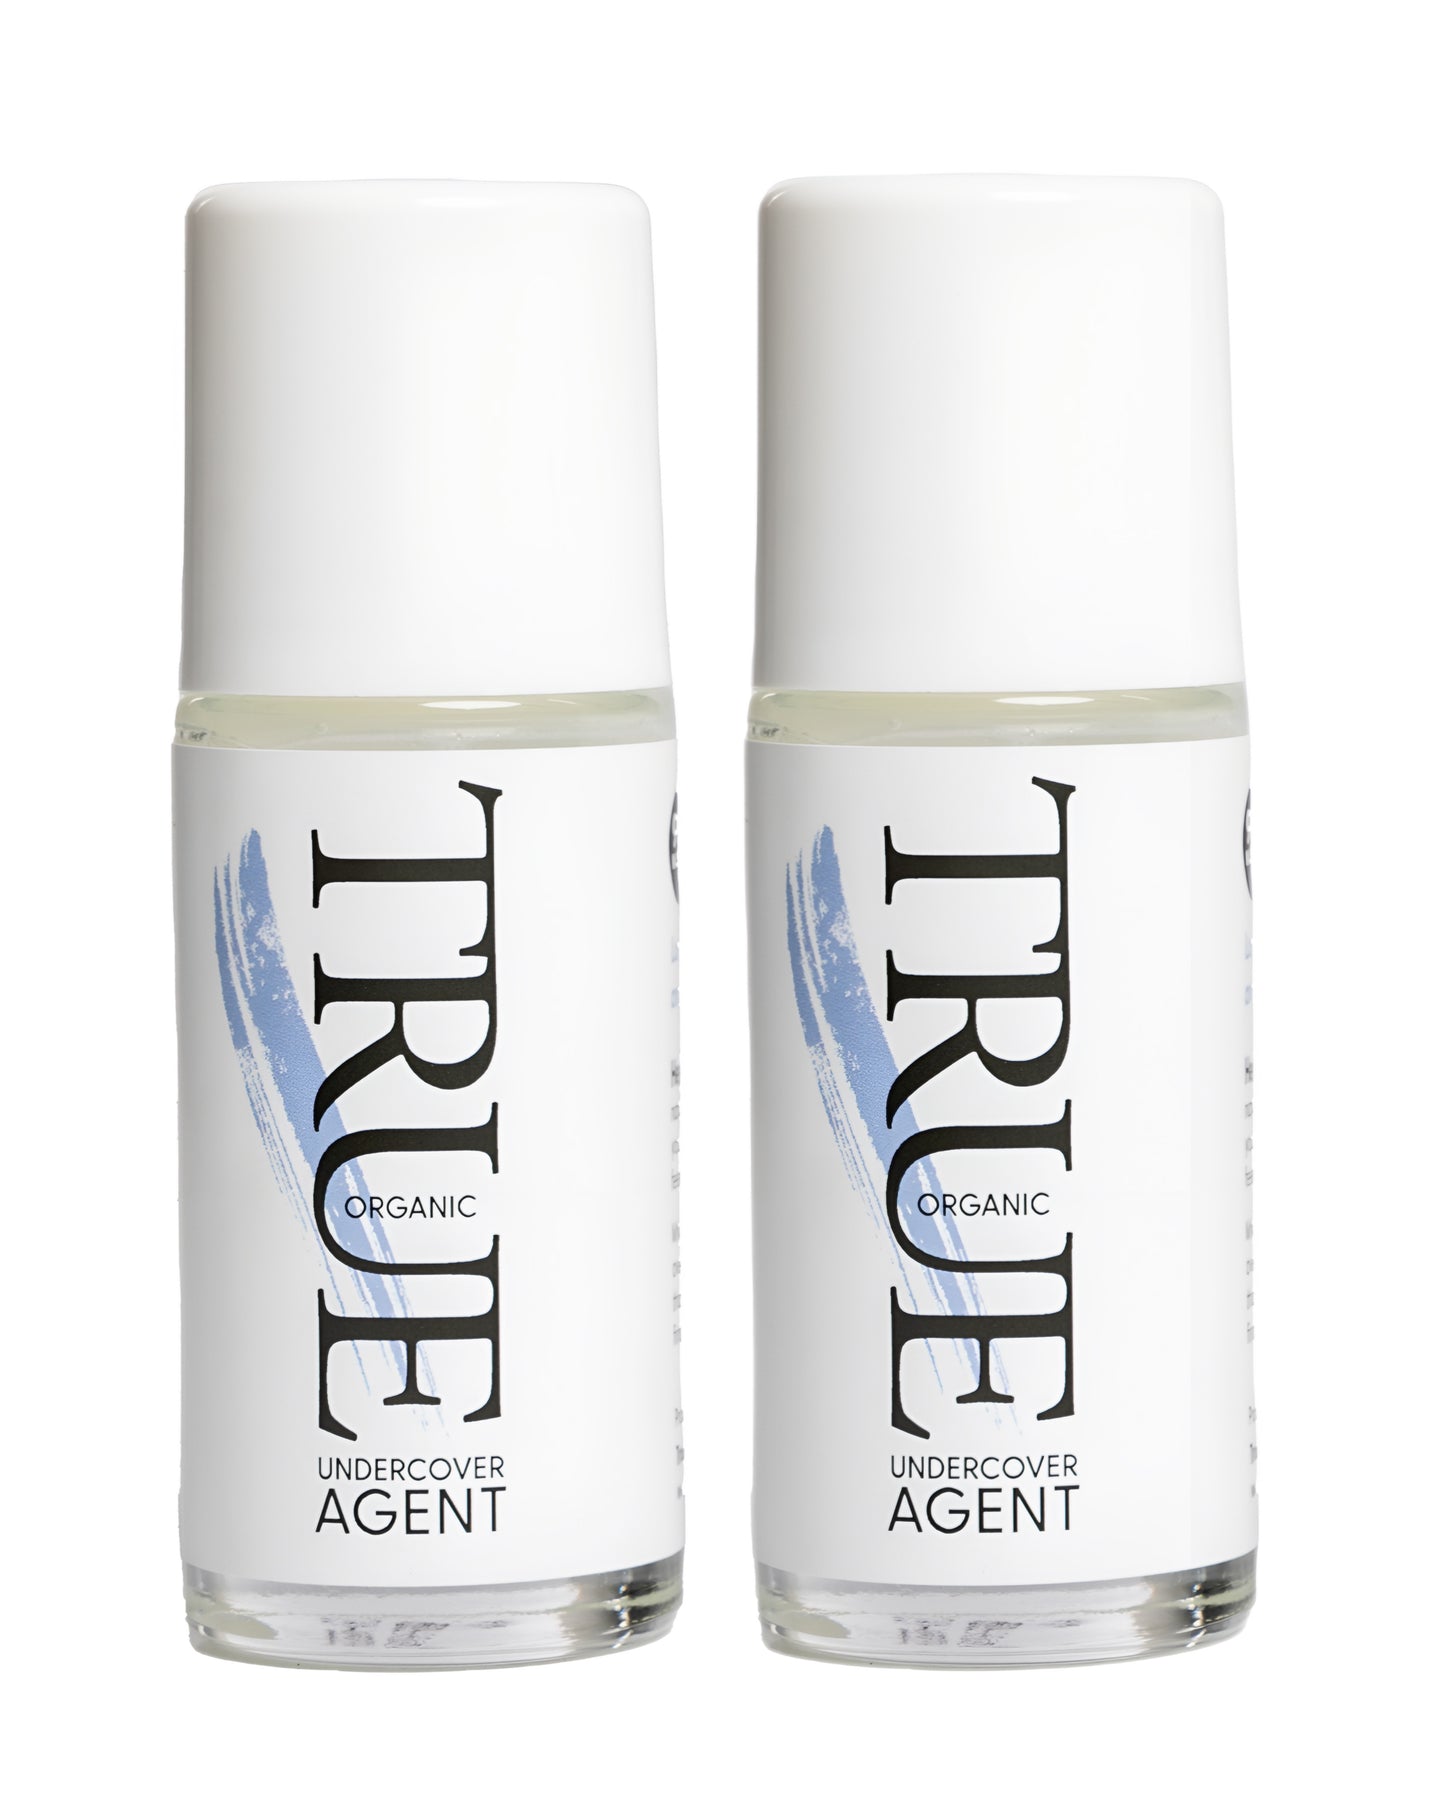 Undercover agent natural deodorant Lavender/bergamot/cassia 